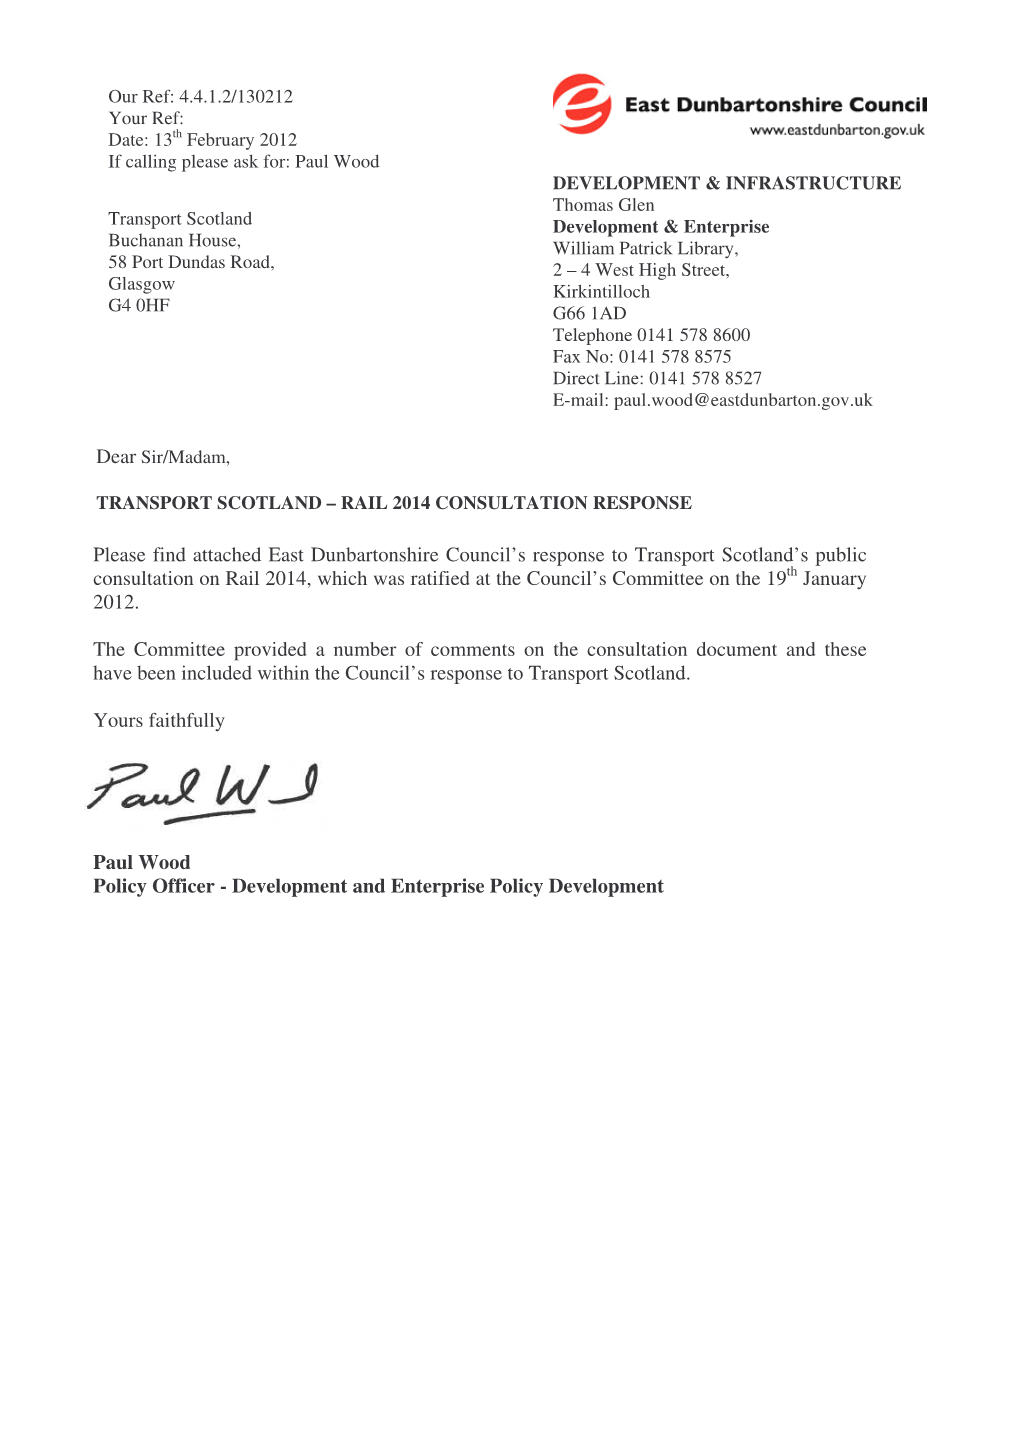 Rail 2014 Consultation Letter